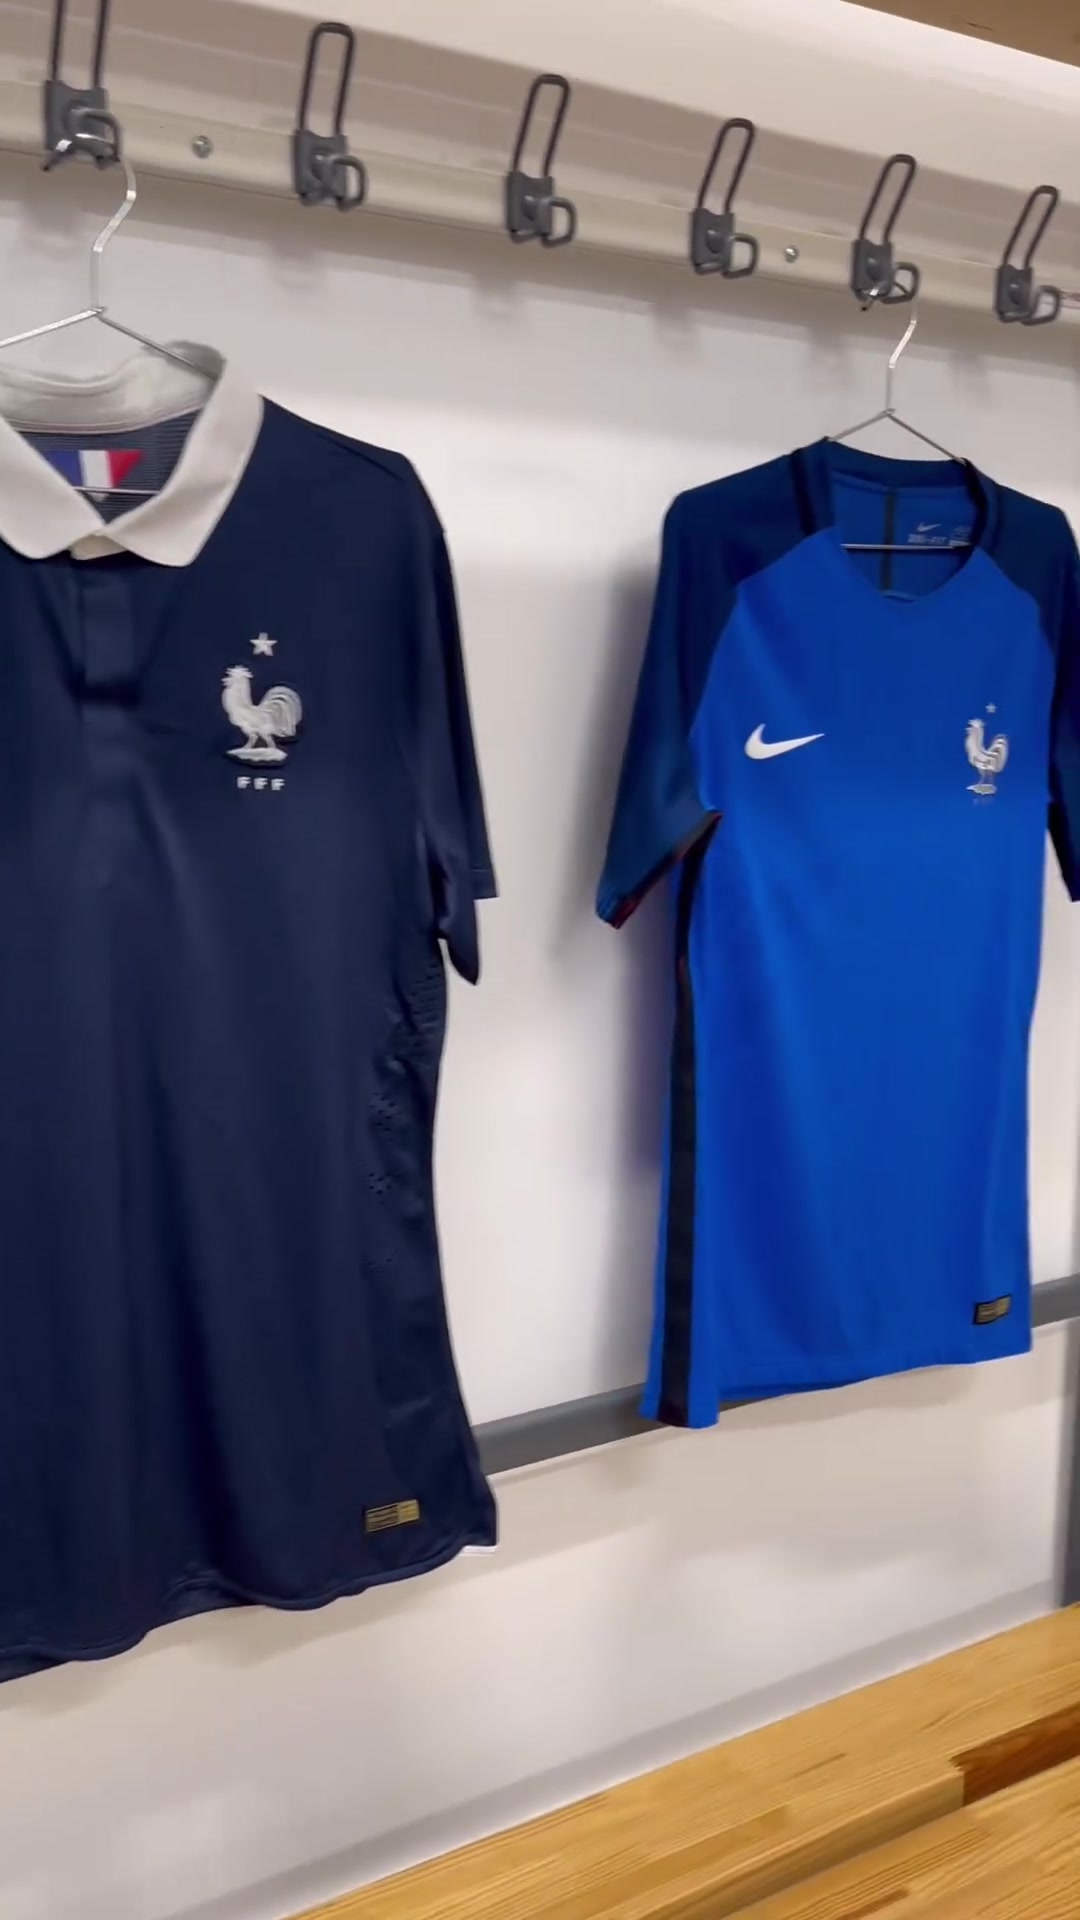 哪件法国队Nike球衣最好看